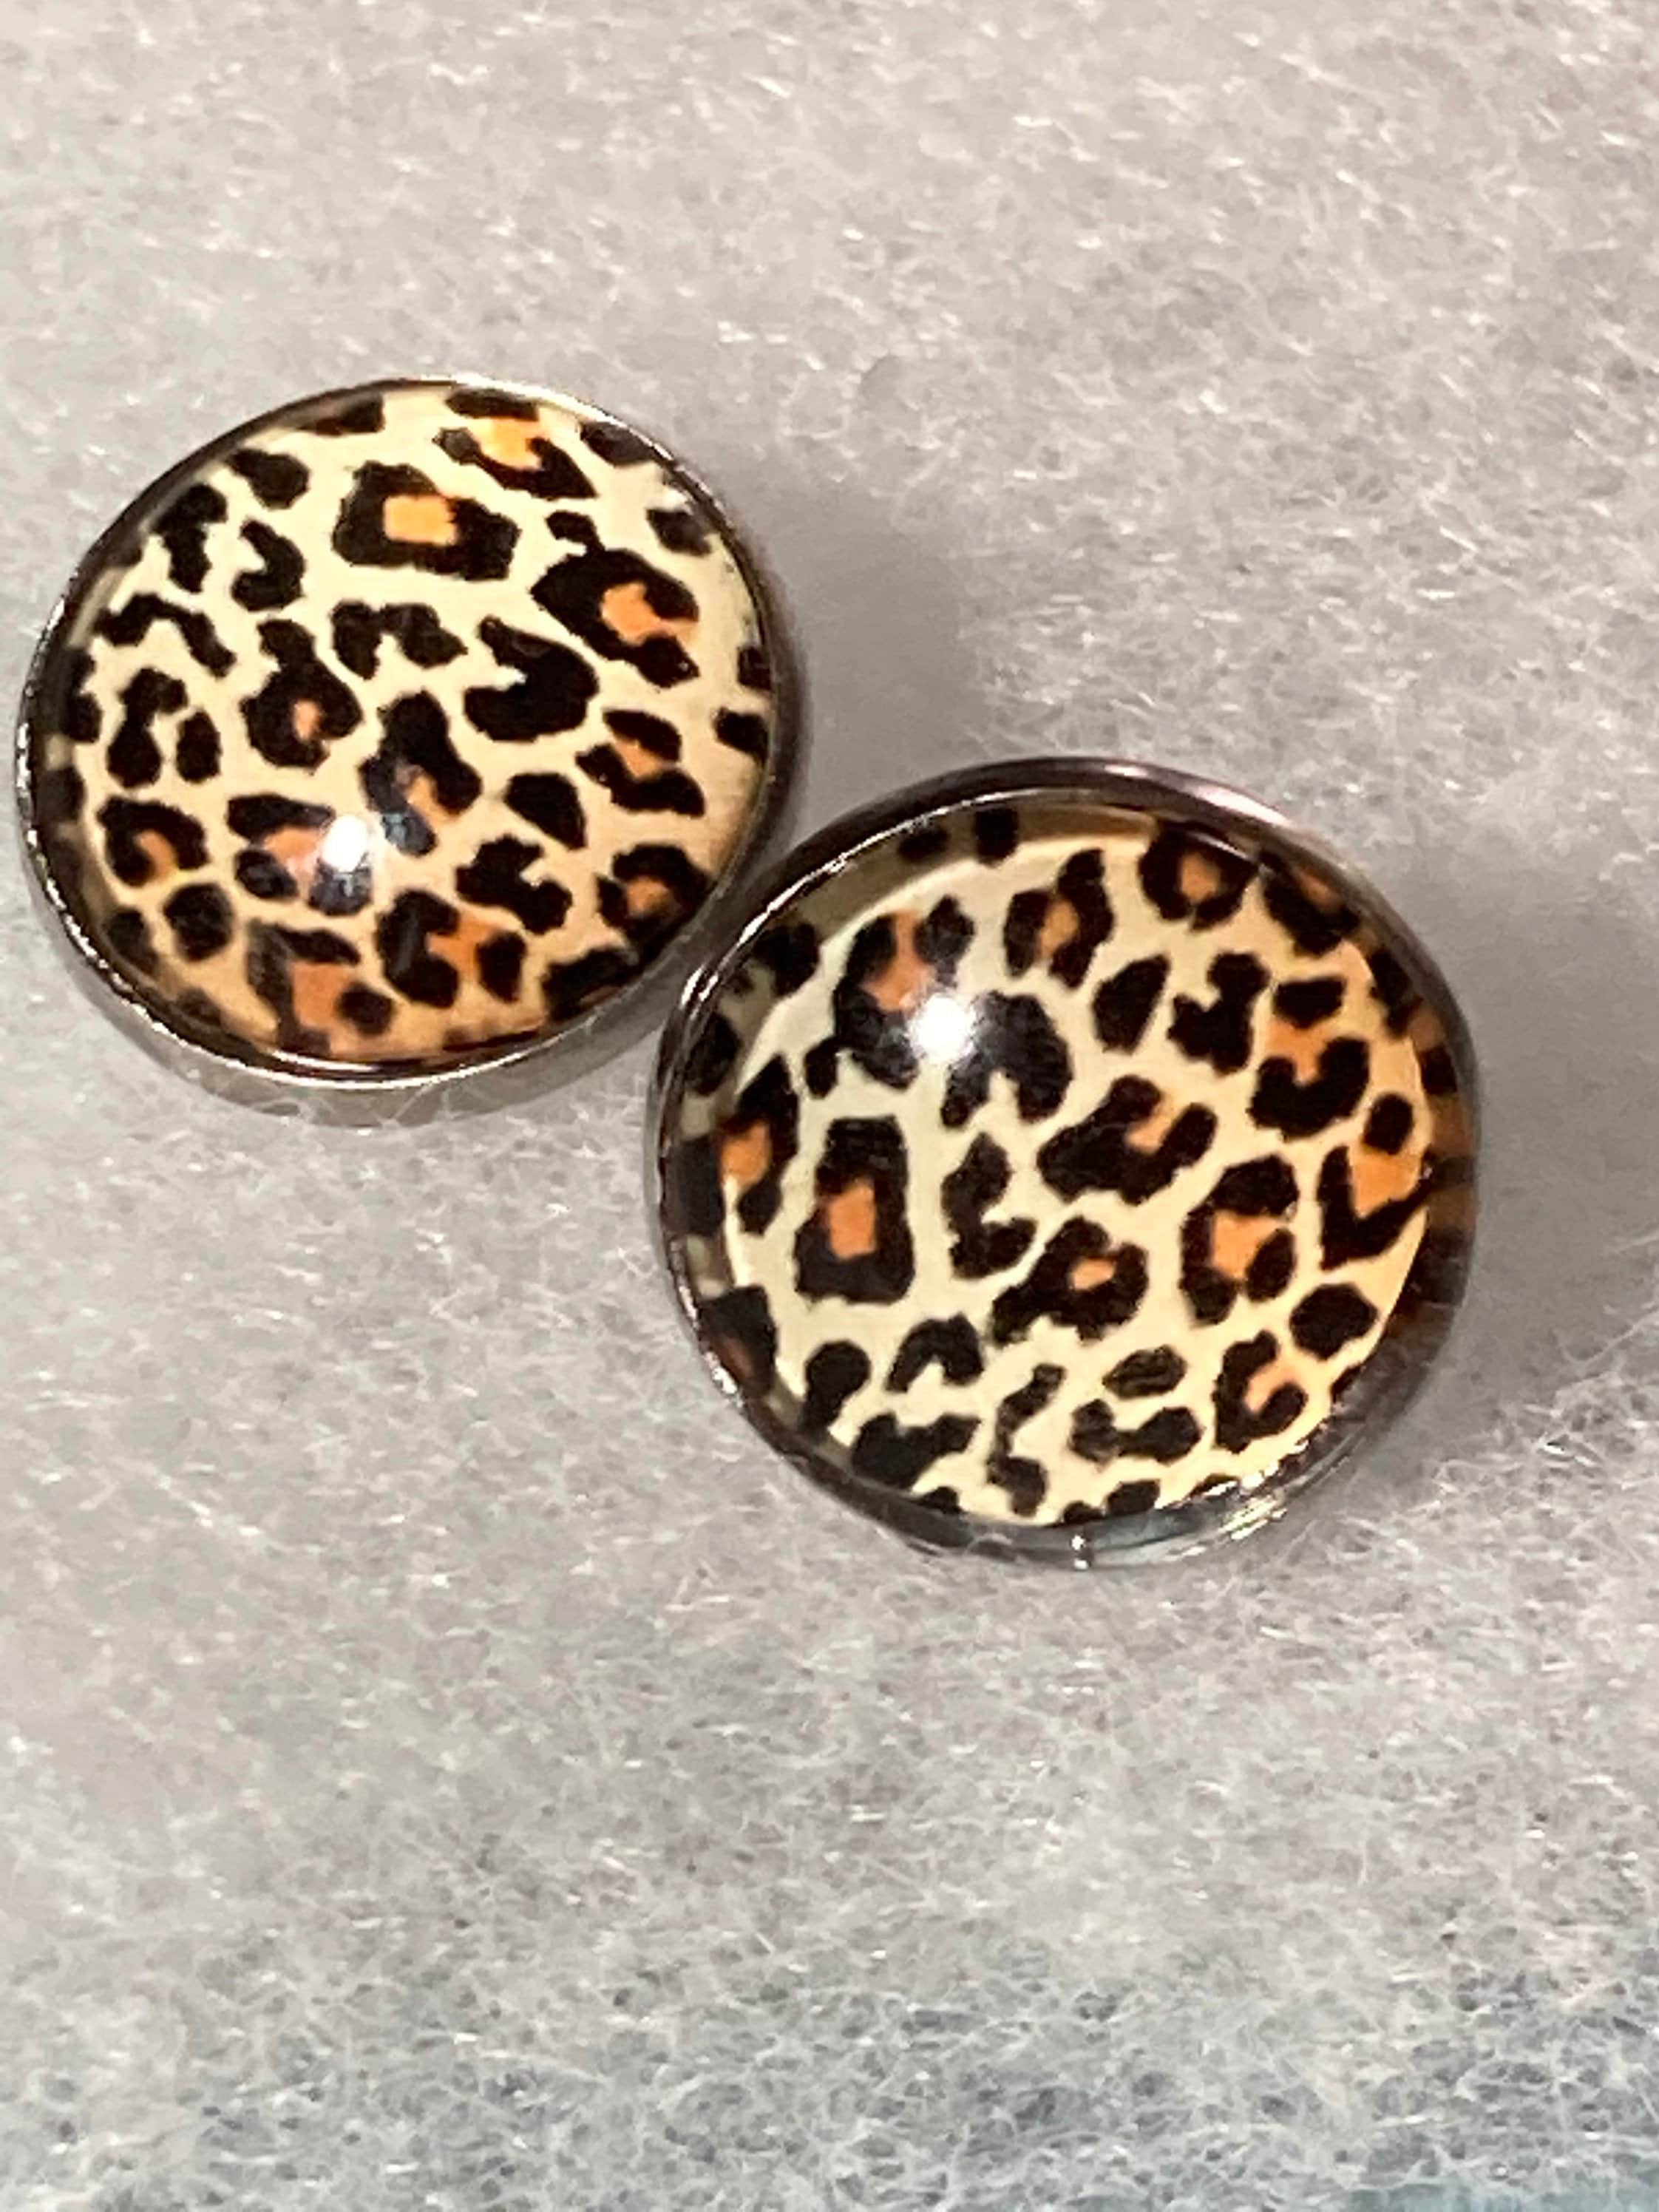 6 Pcs Leopard Print Purse Belt Jewelry Set, Women Cheetah Earrings Necklace  Multilayer Leather Cuff Wrap Bracelet Wristlet Clutch Wallet Crossbody Bag  Stretch Belt : Amazon.co.uk: Fashion